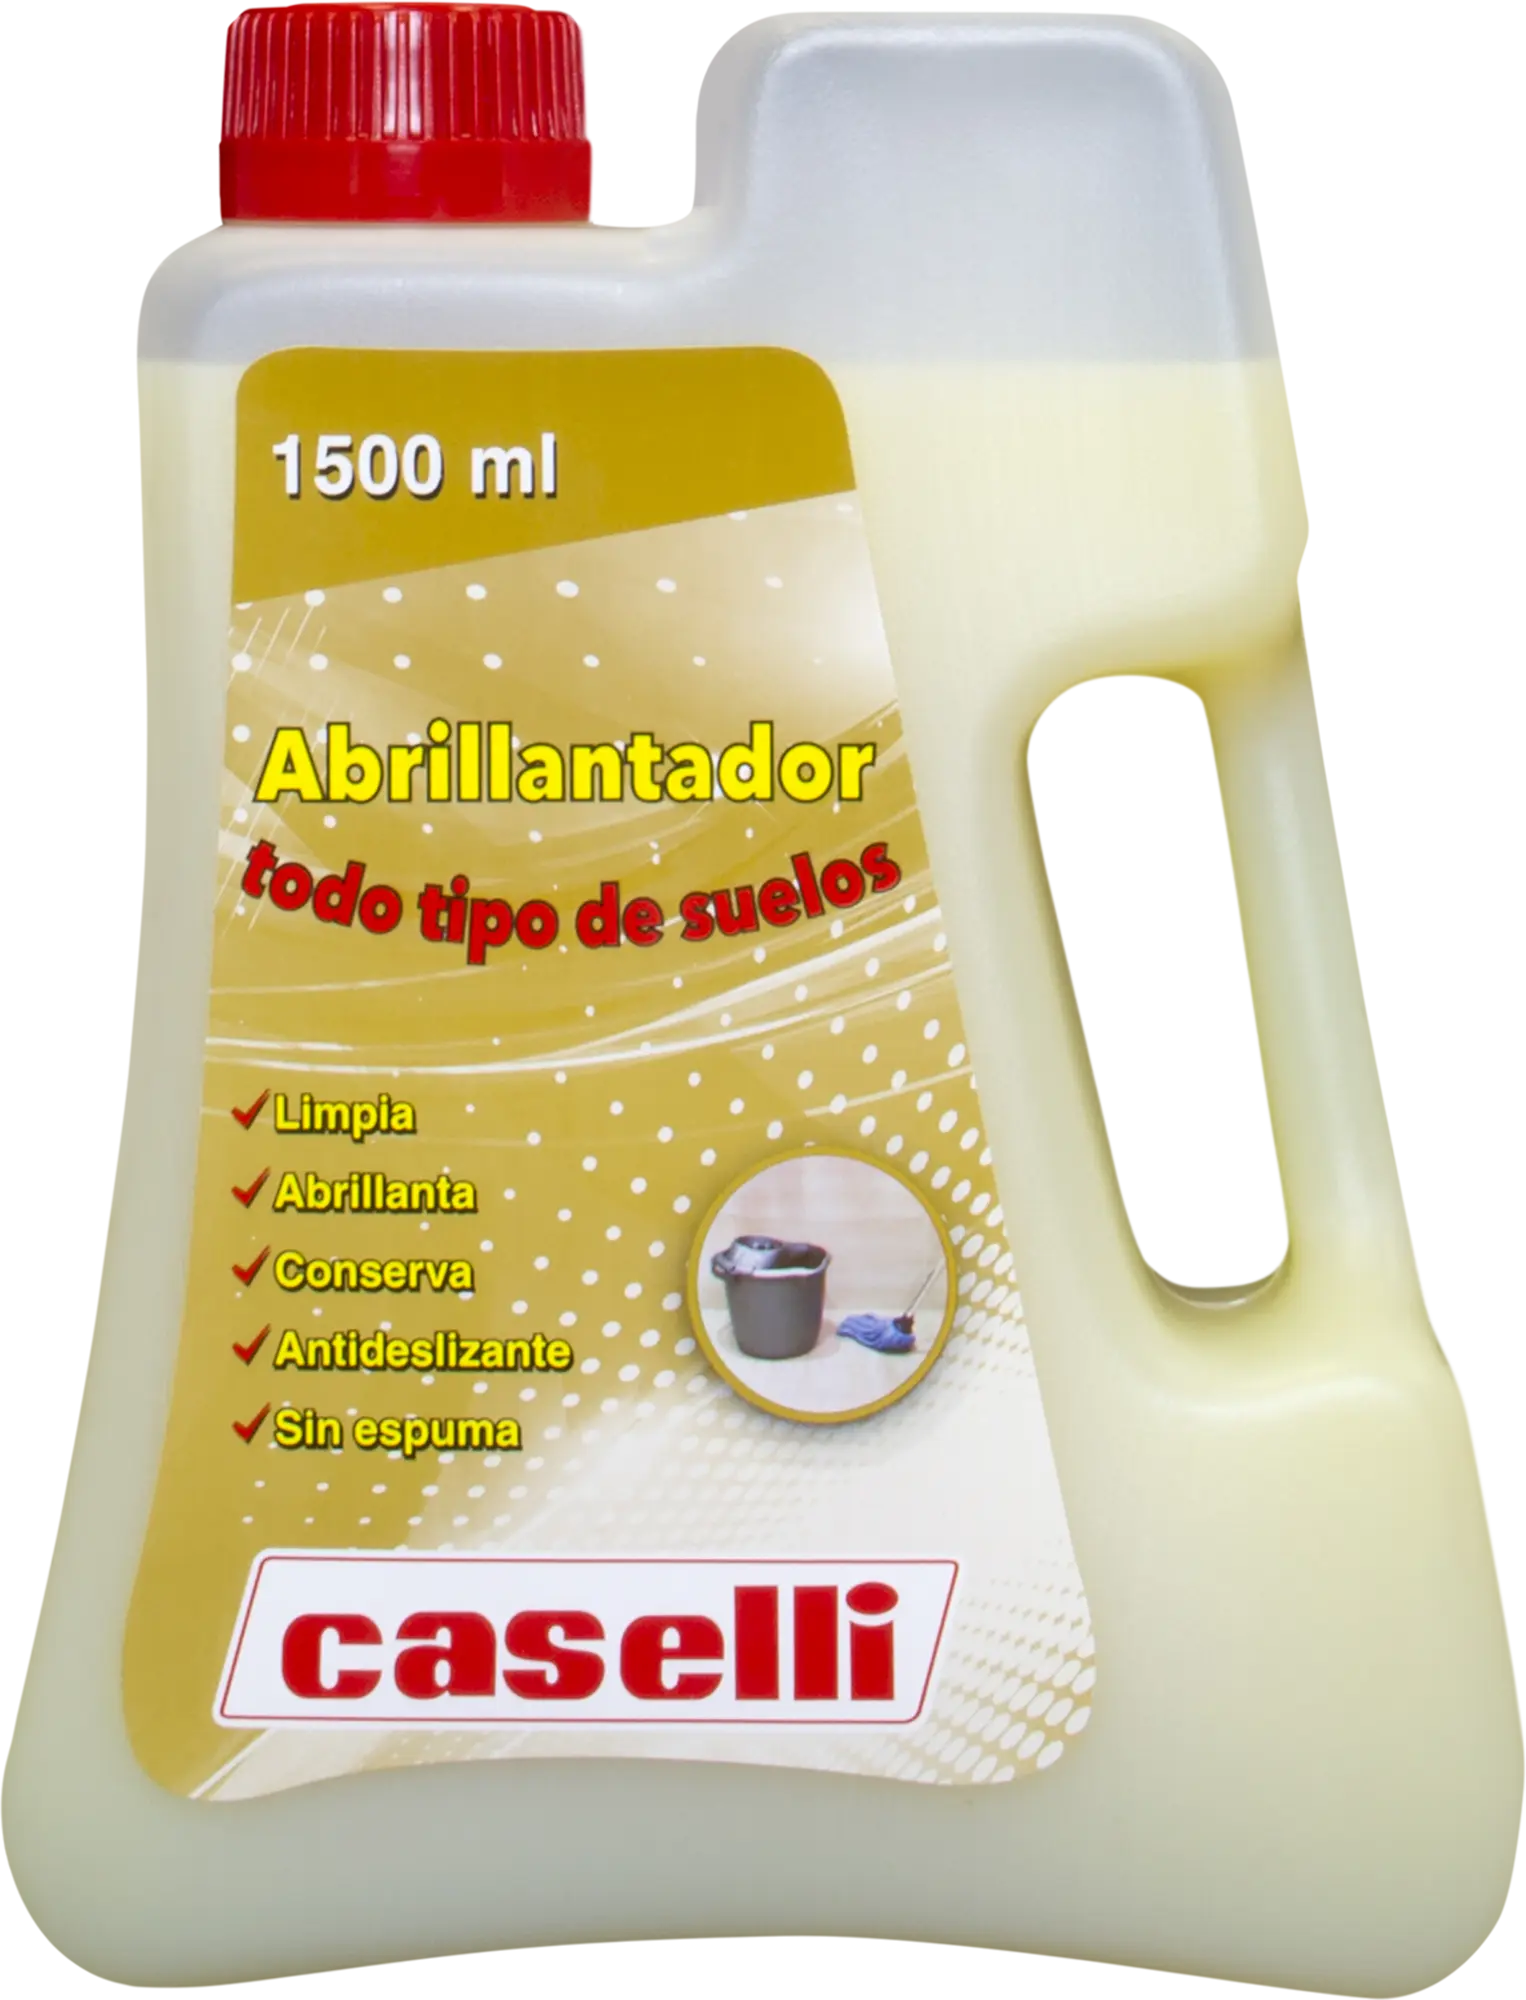 Caselli - Productos Caselli para suelos de mármol y terrazo